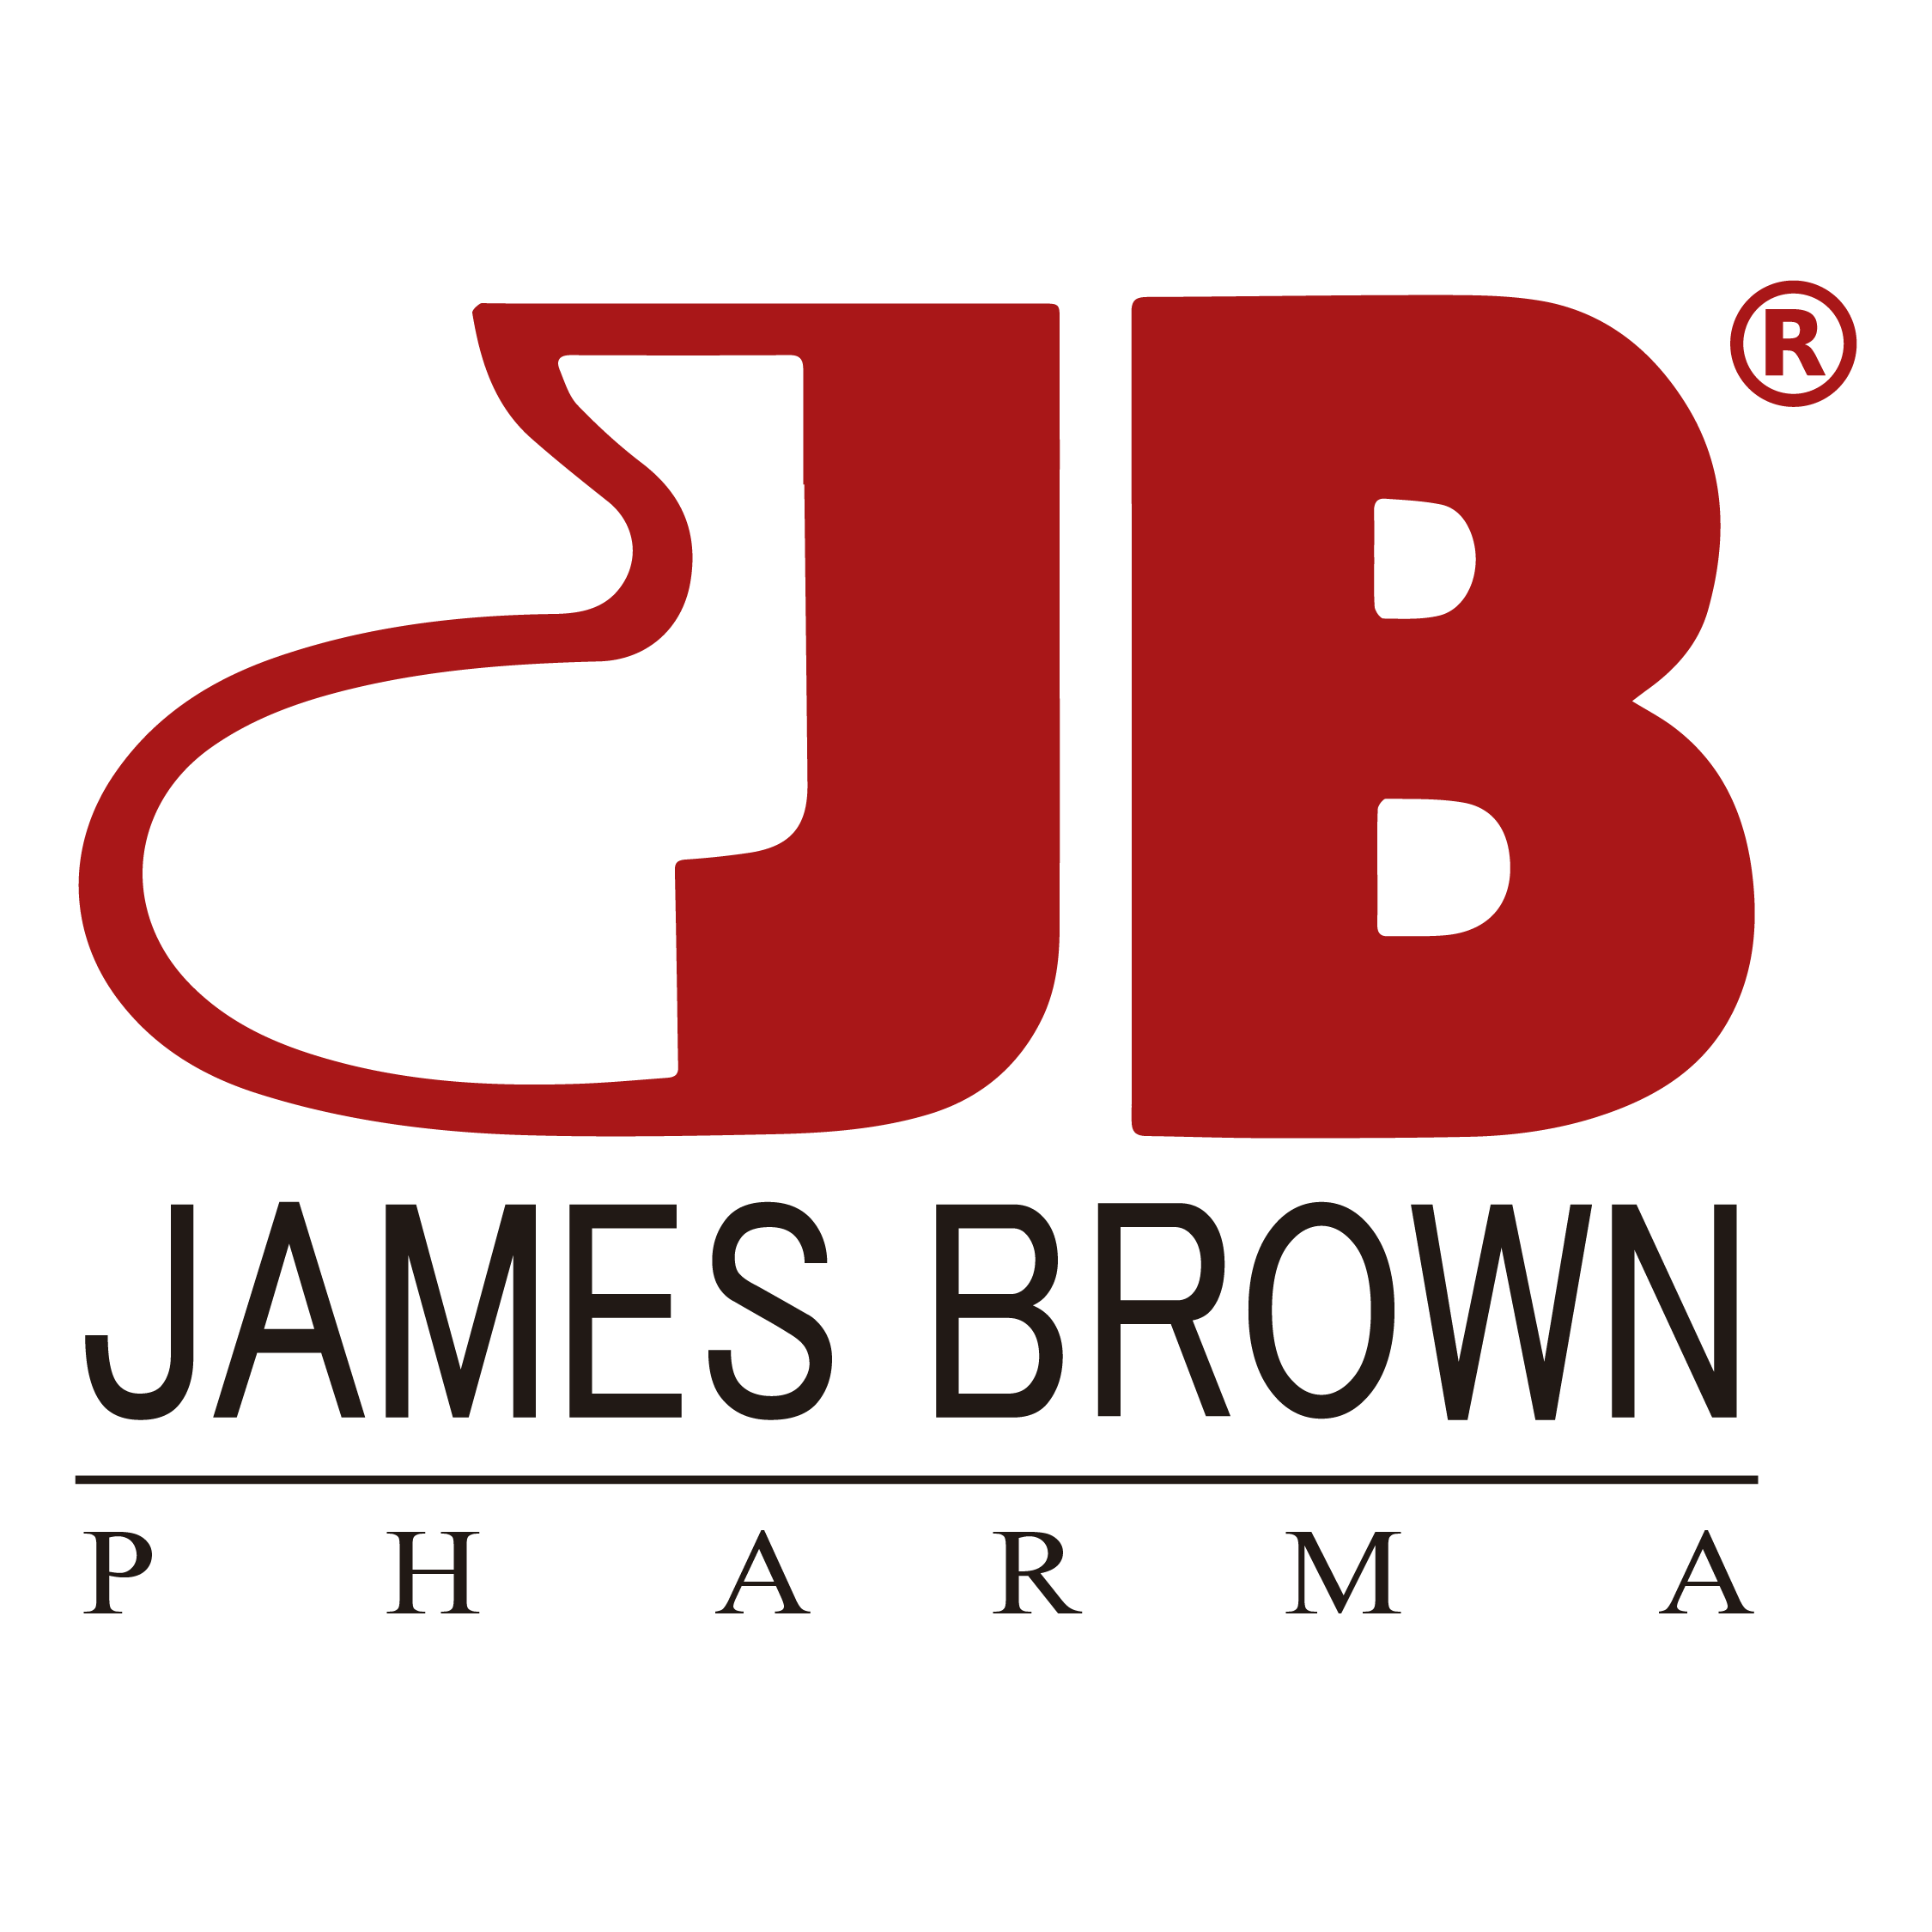 James Brown Pharma